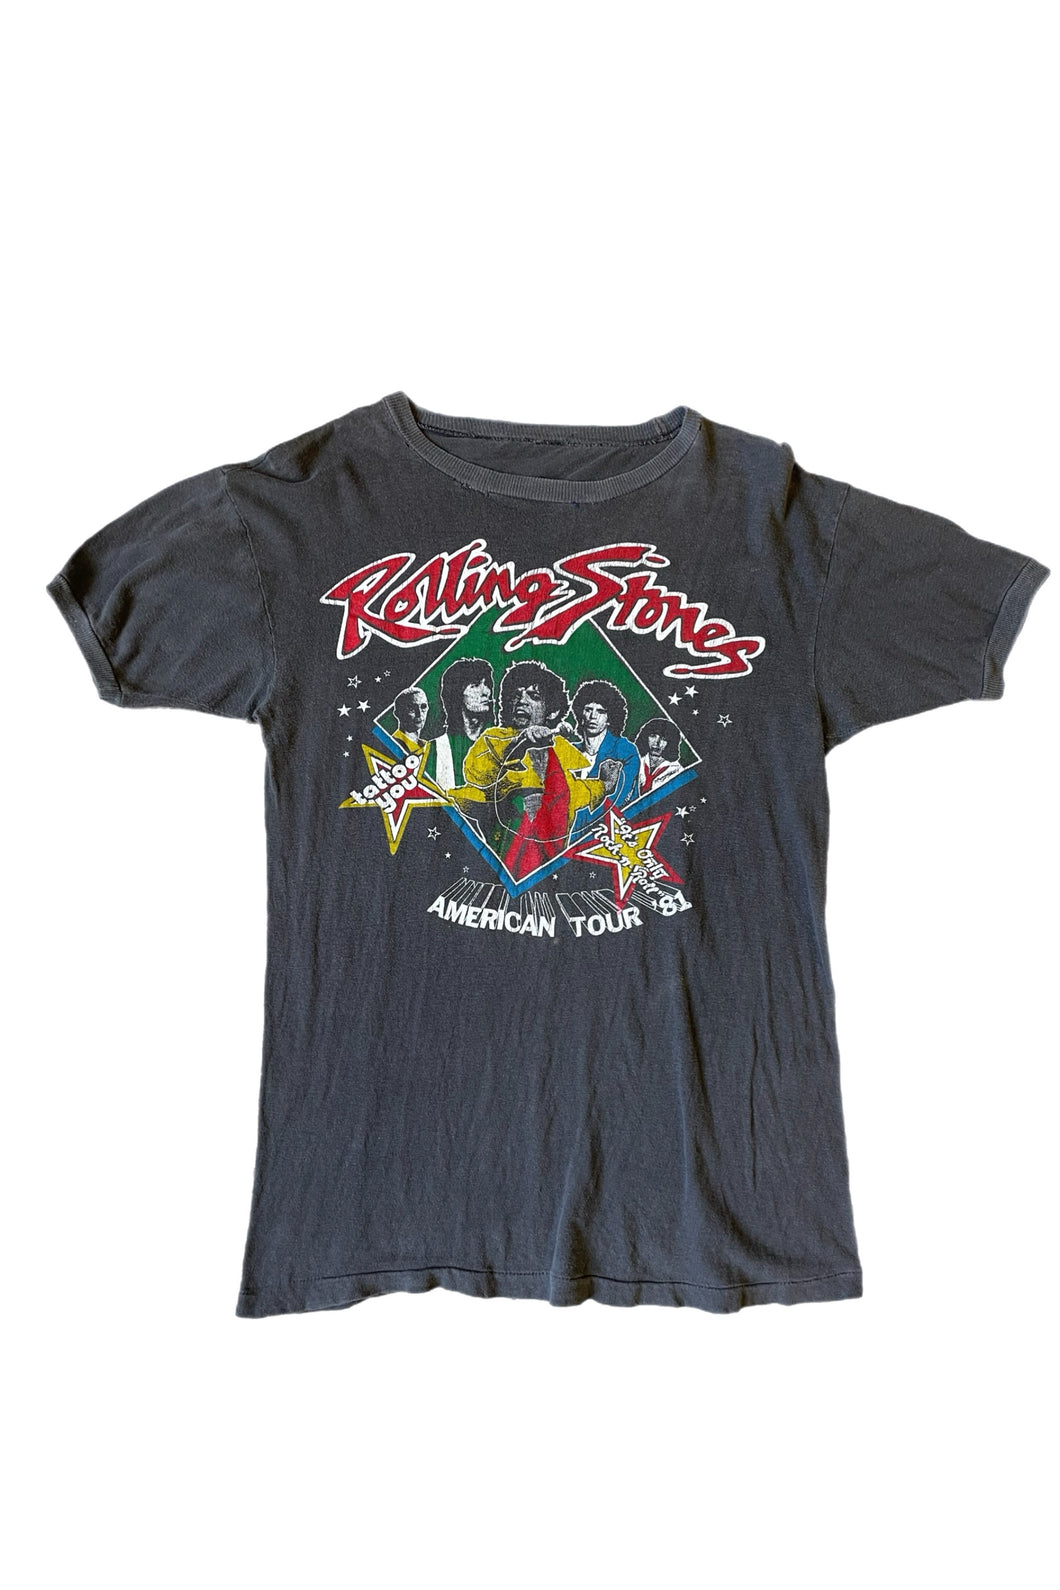 Vintage 1981 The Rolling Stones Tour T-Shirt